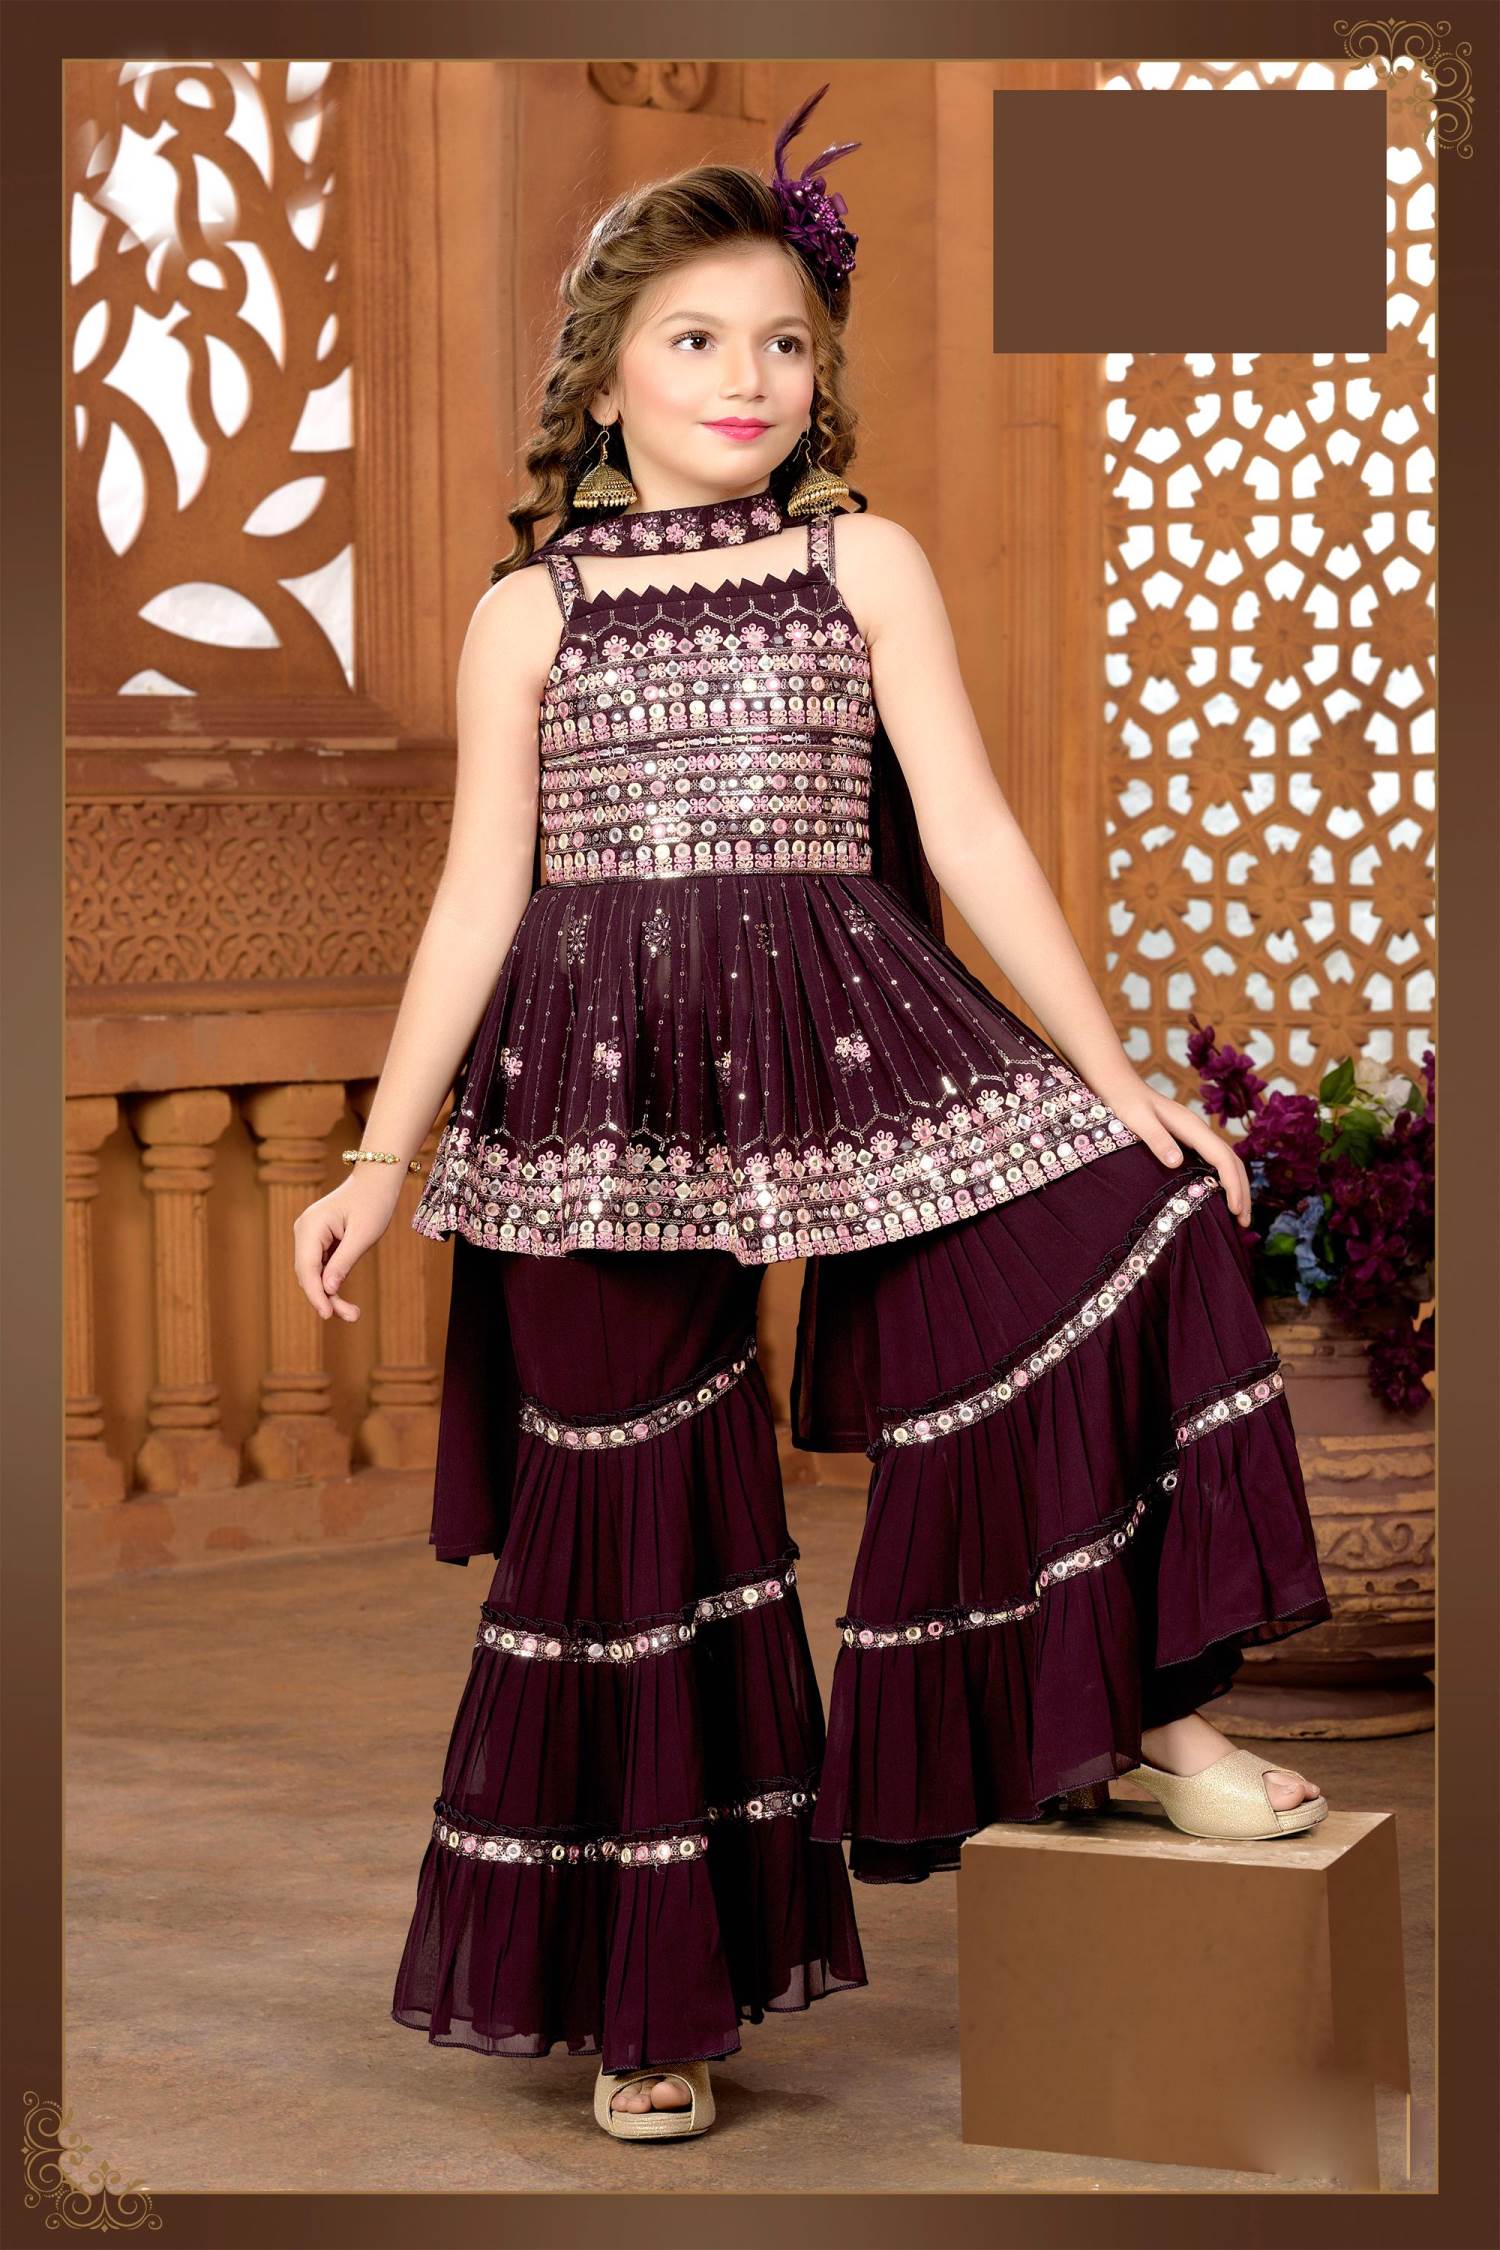 Modern Girl Dark Green Designer salwar suit On Heavy Rangoli Satin Fabric -  Ethnic Race